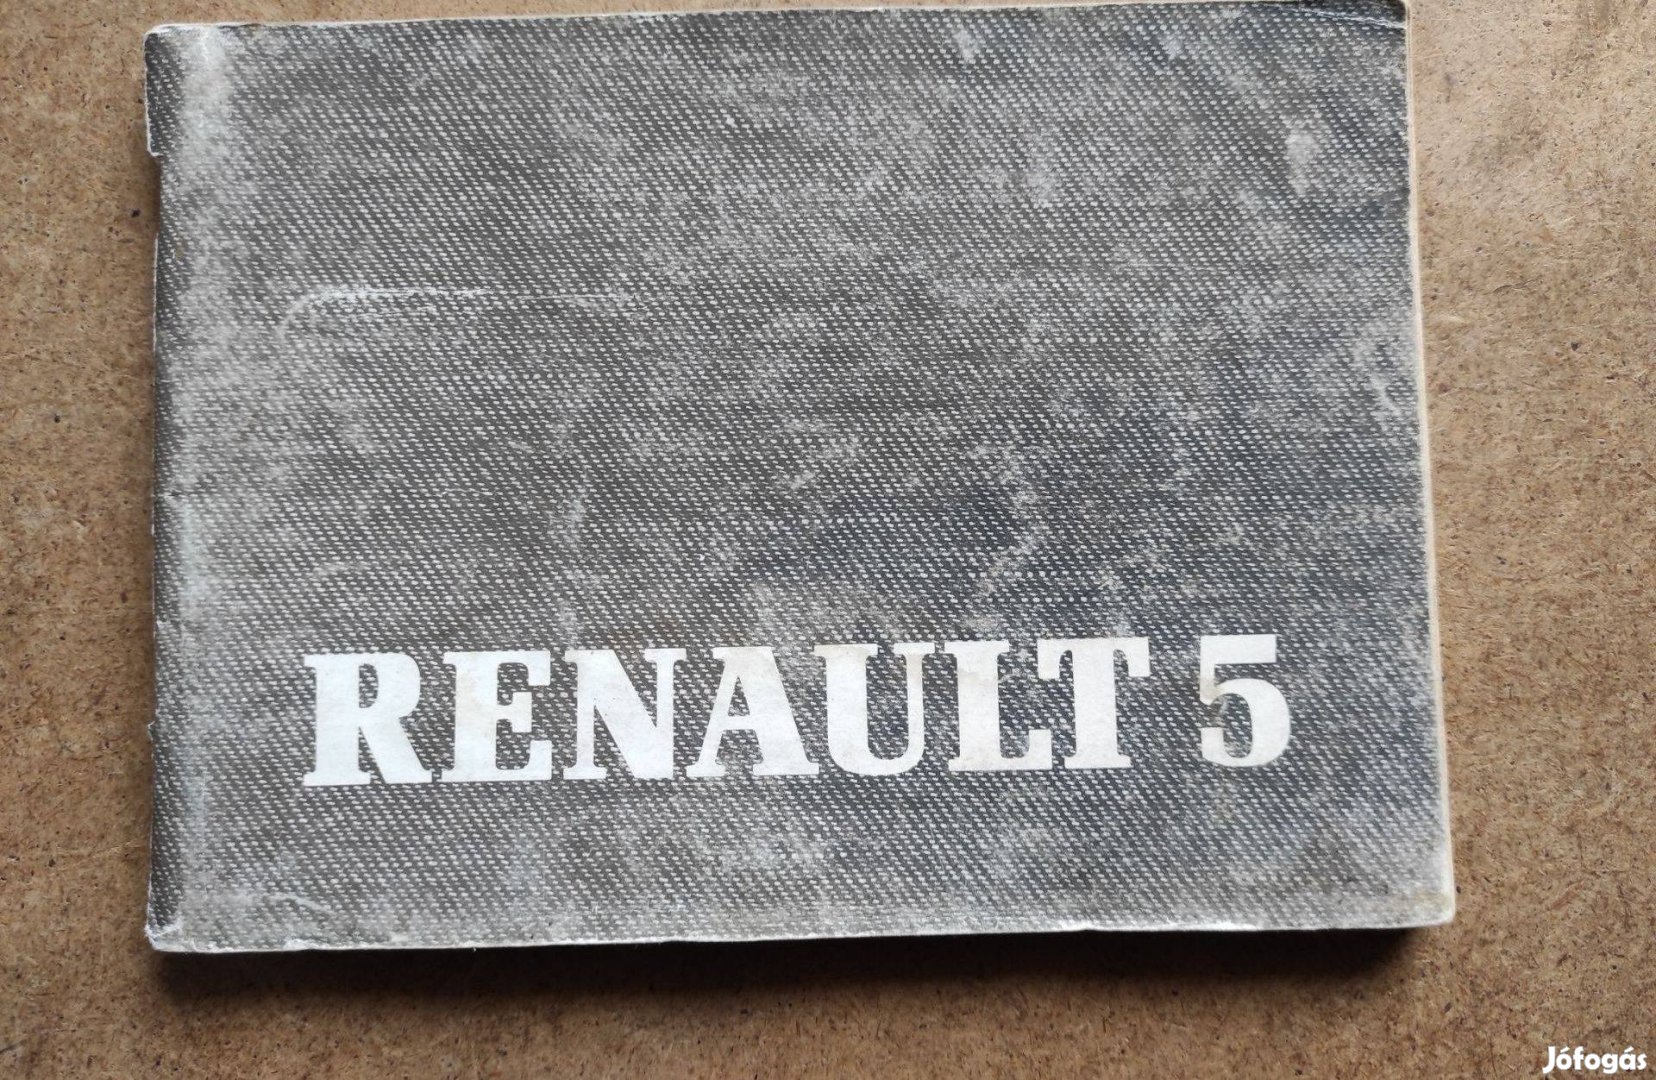 Renault 5 kezelési útmutató. 1987.10-